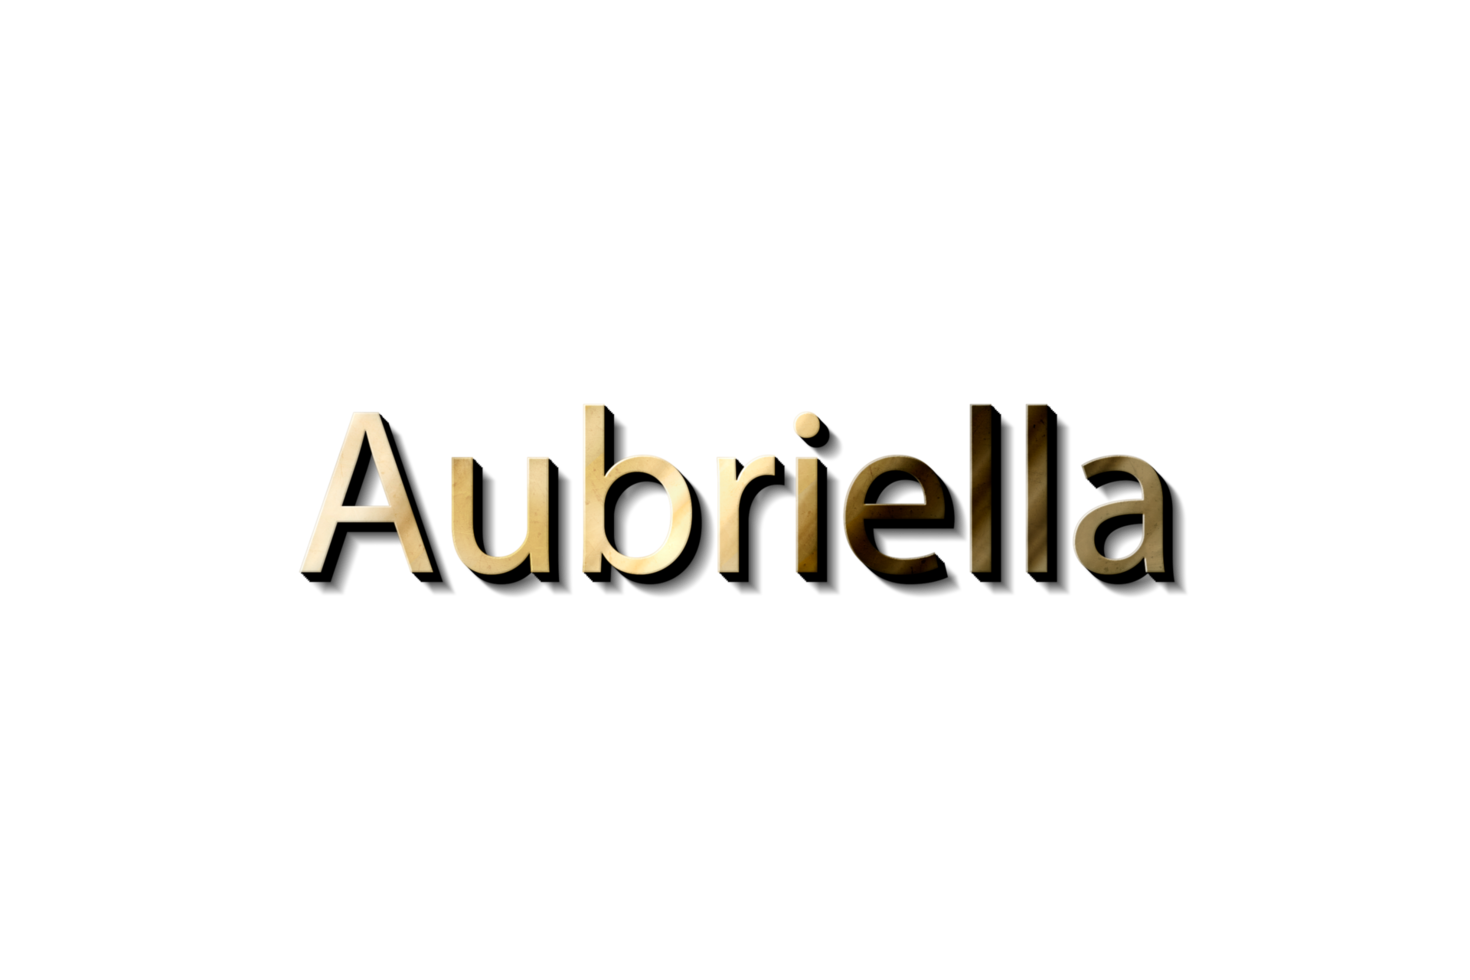 aubriella 3d mockup png